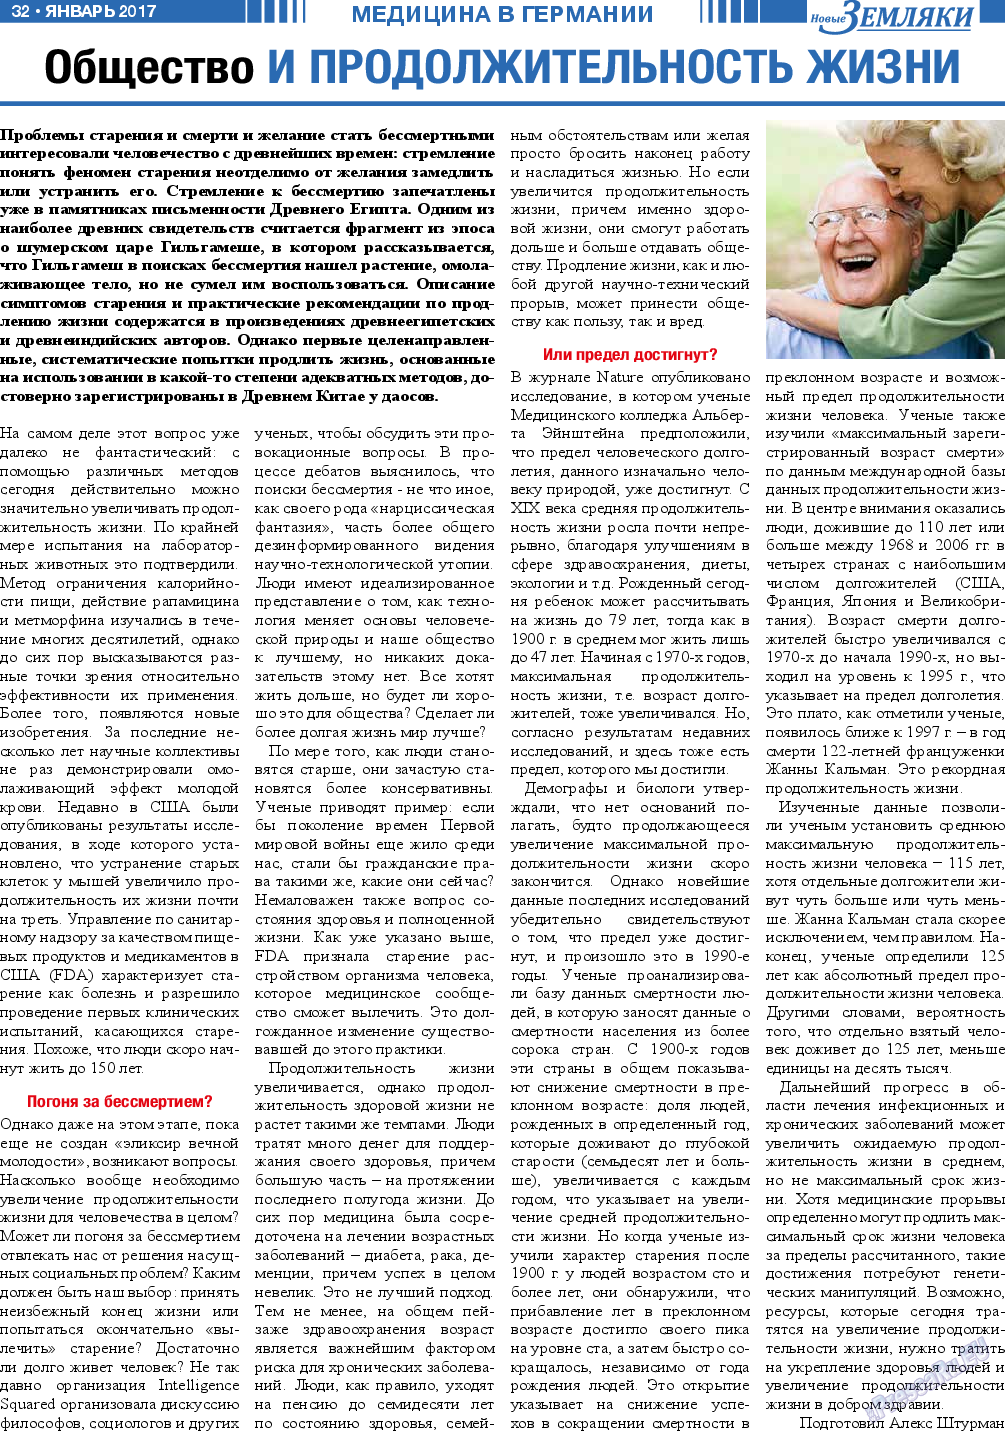 Новые Земляки, газета. 2017 №1 стр.32